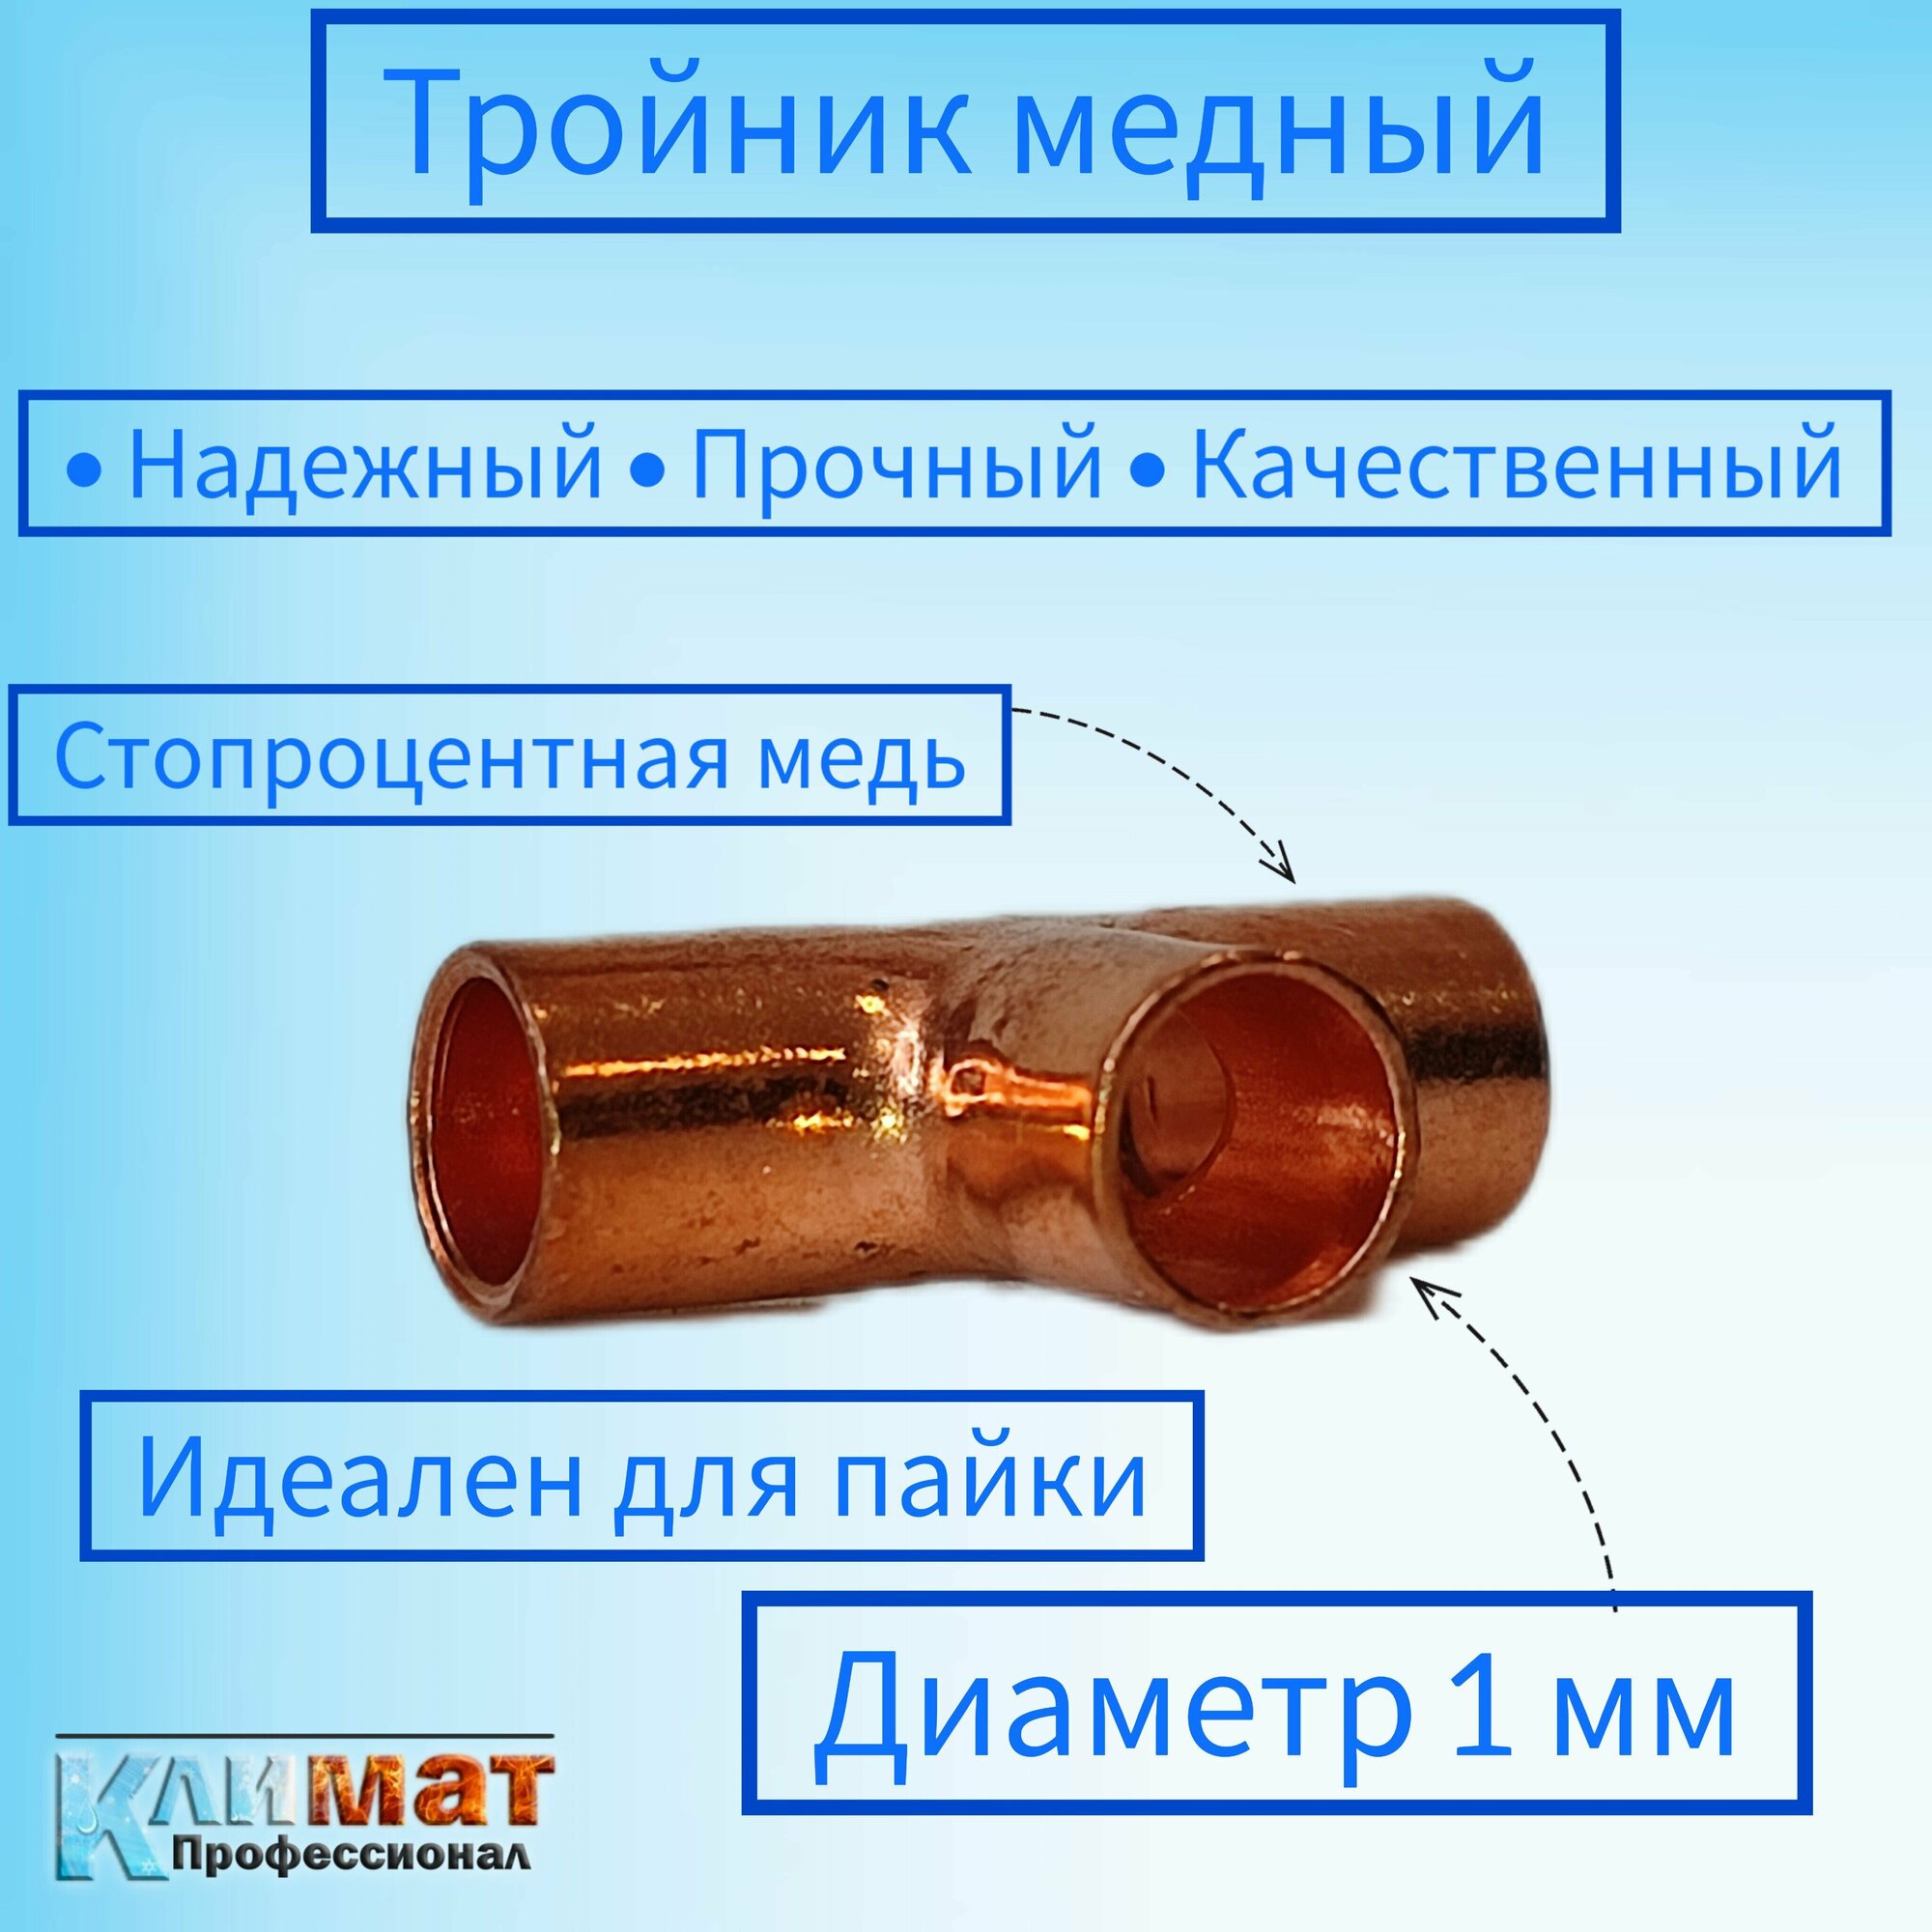 Тройник медный под пайку 1/4" (635 мм) / тройник для пайки медных труб